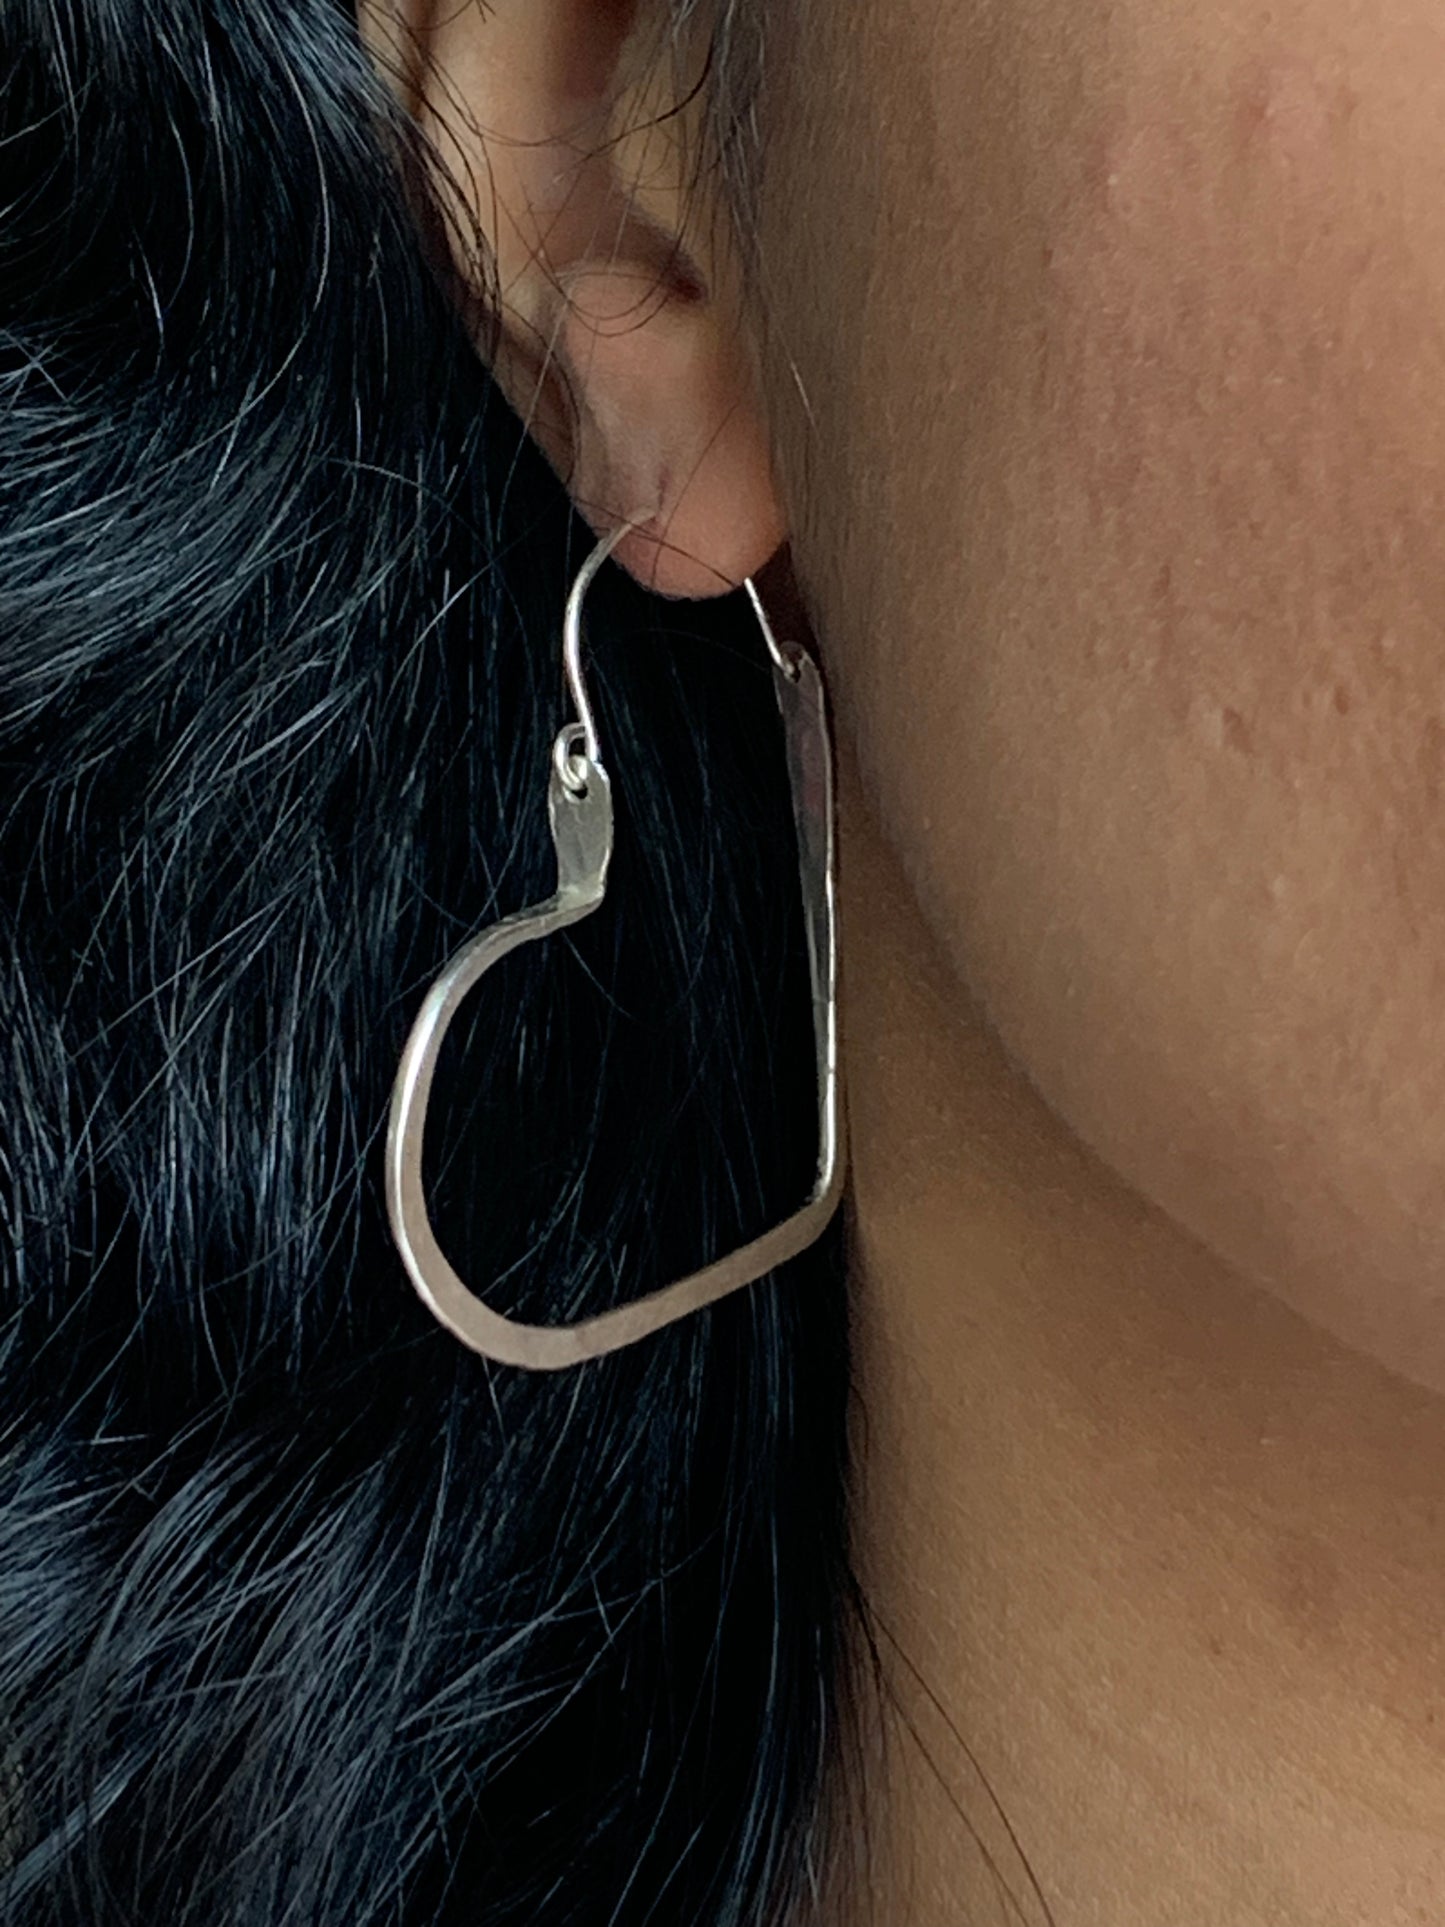 Silver Heart earrings